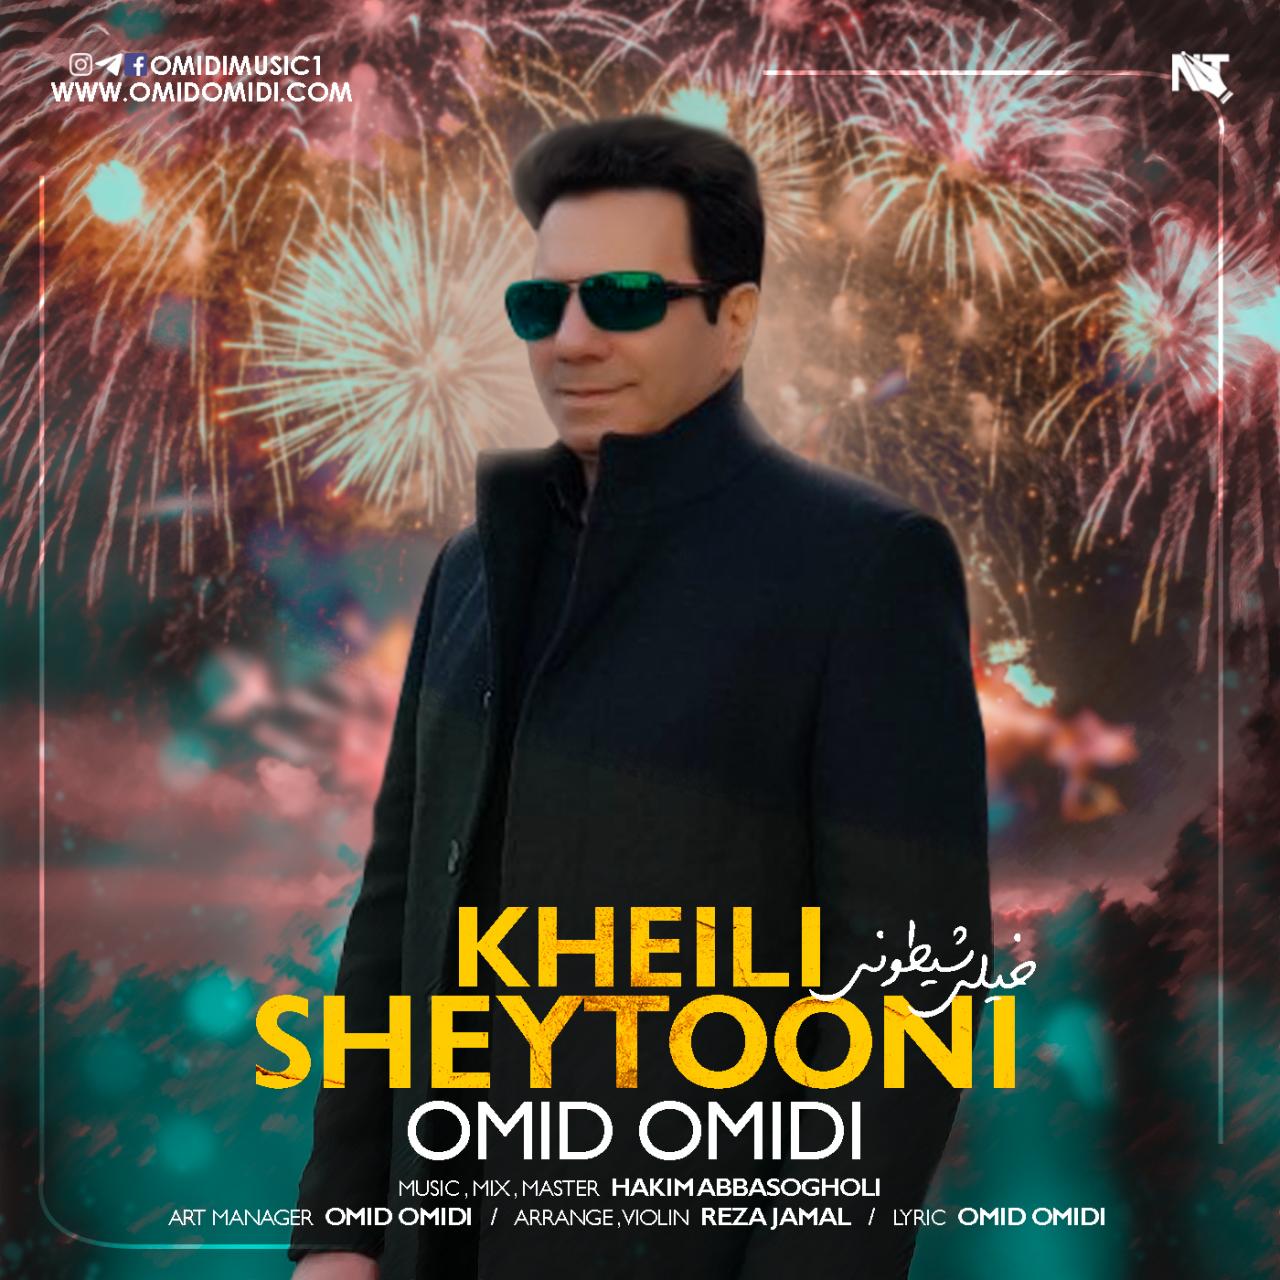  دانلود آهنگ جدید امید امیدی - خیلی شیطونی | Download New Music By Omid Omidi - Kheili Sheytooni